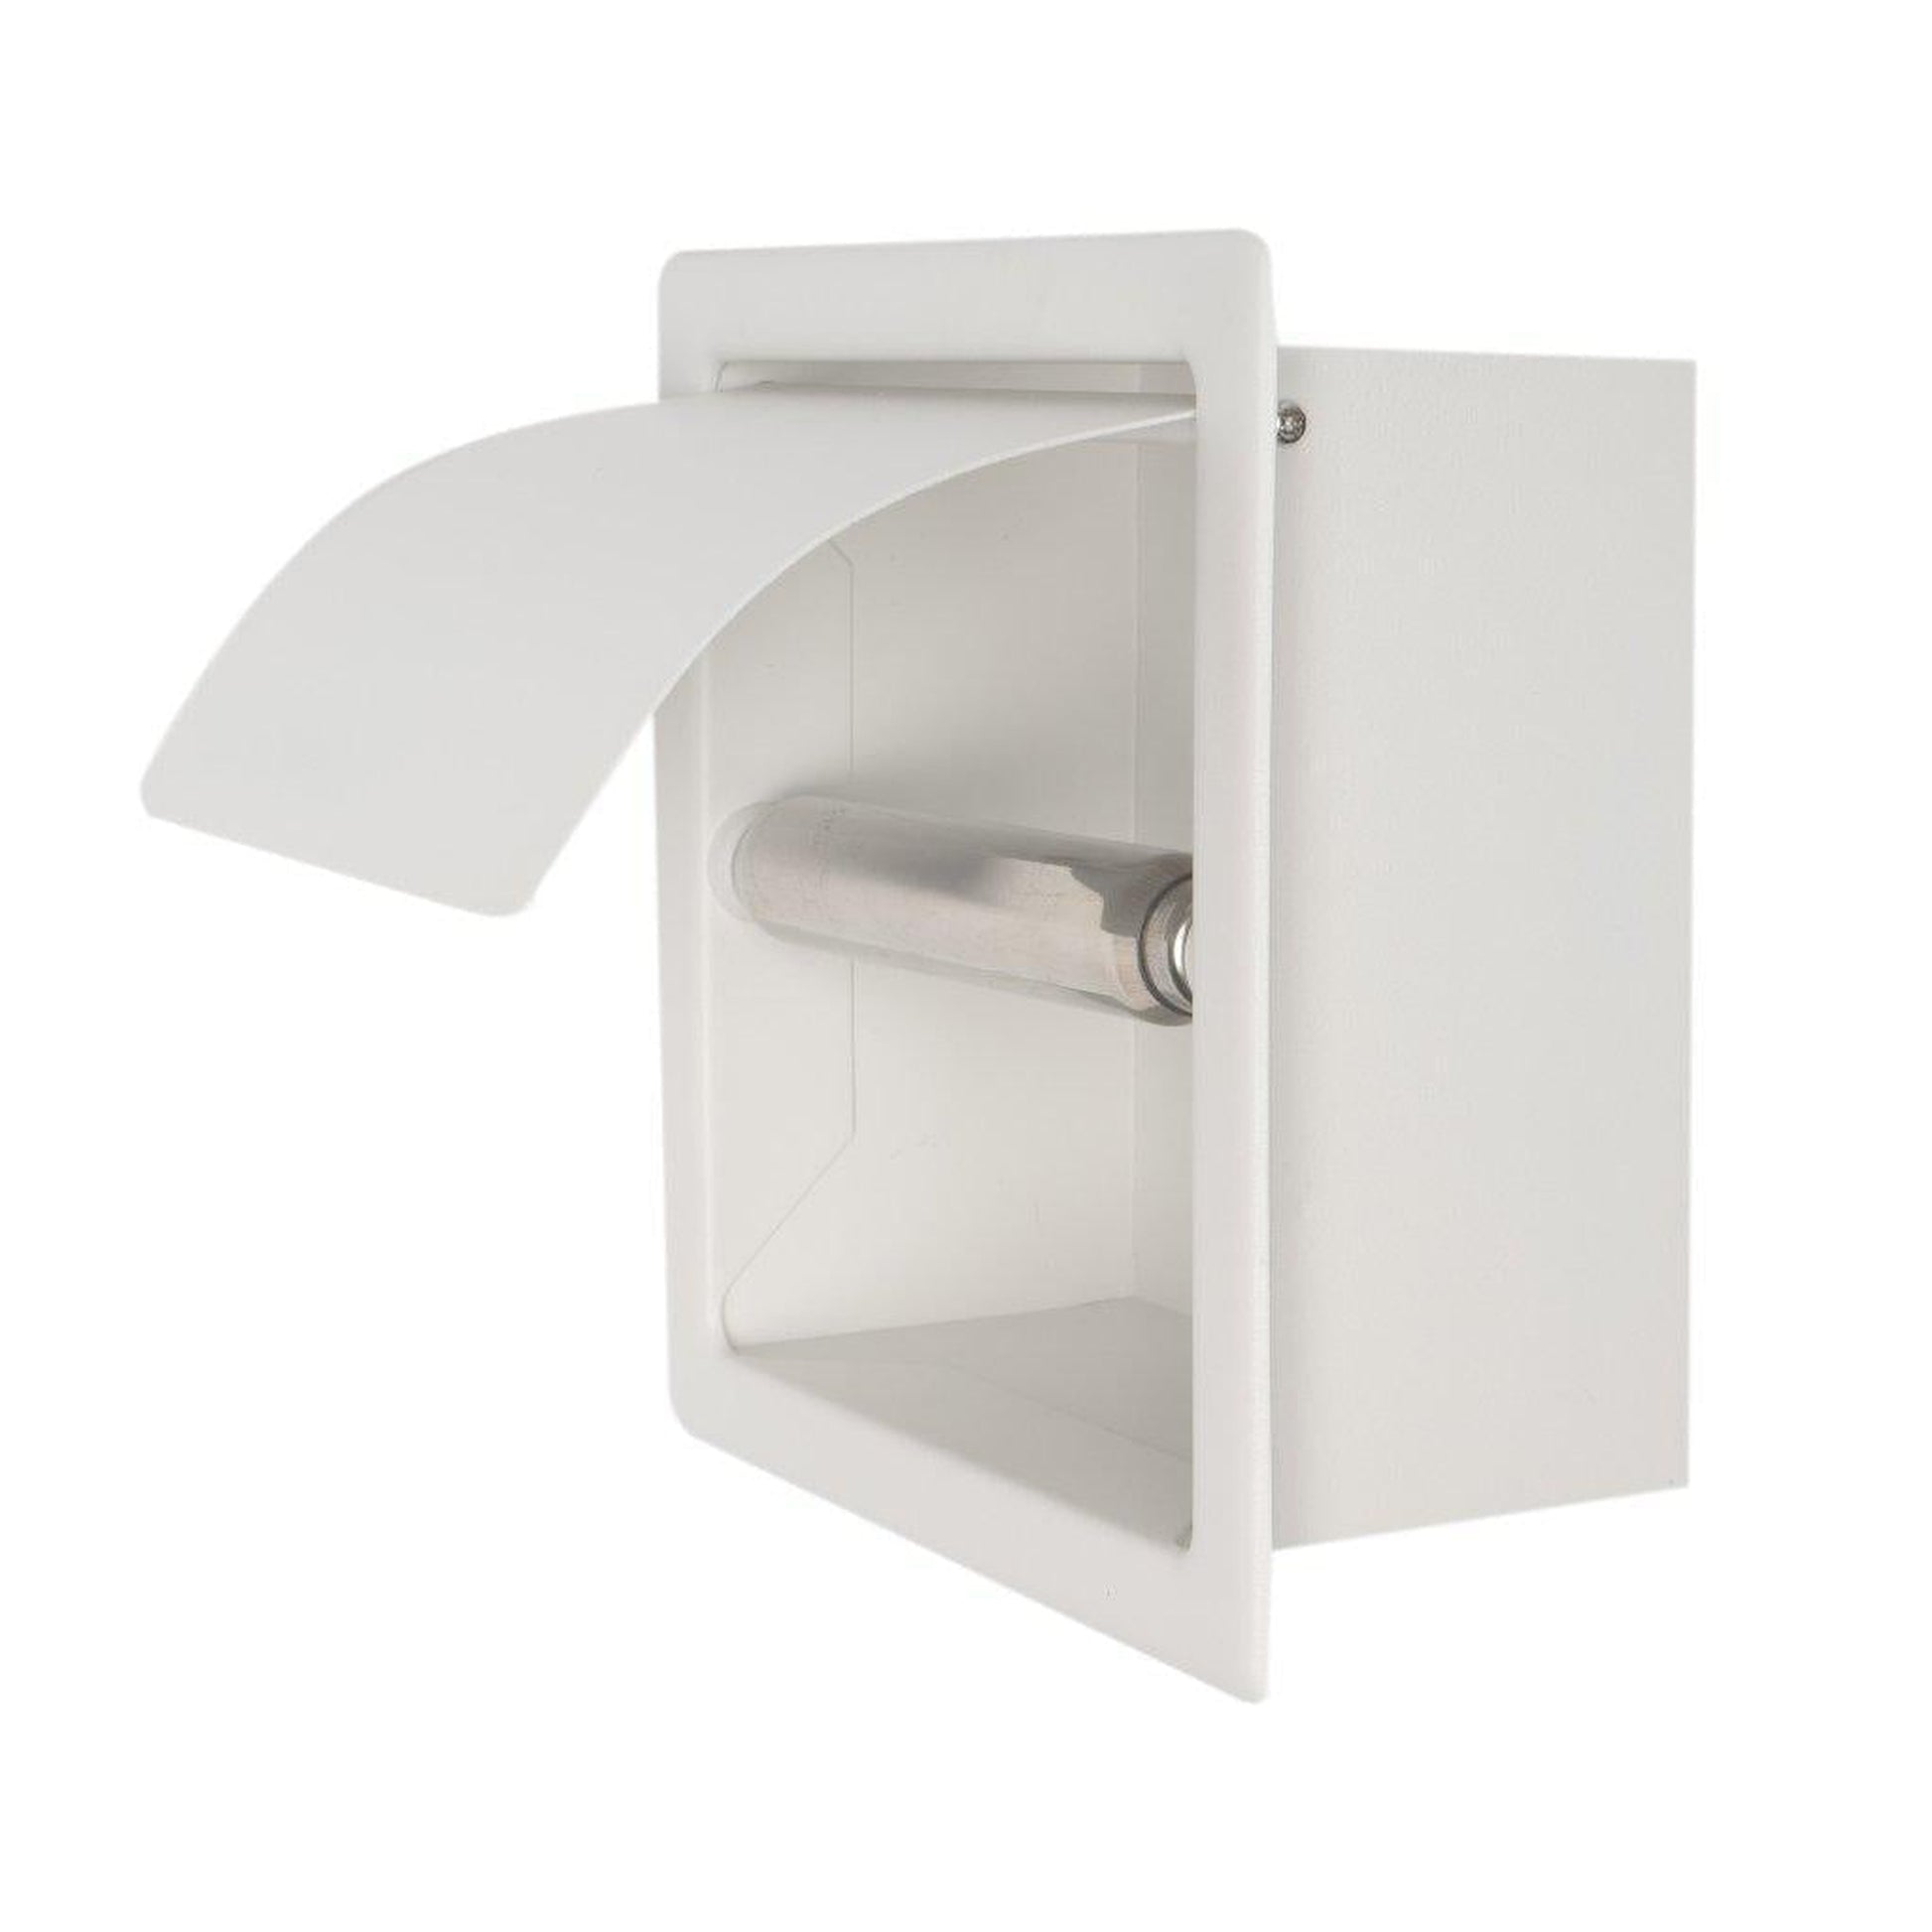 ALFI brand ABTPC77-W Toilet Paper Holder, White Matte